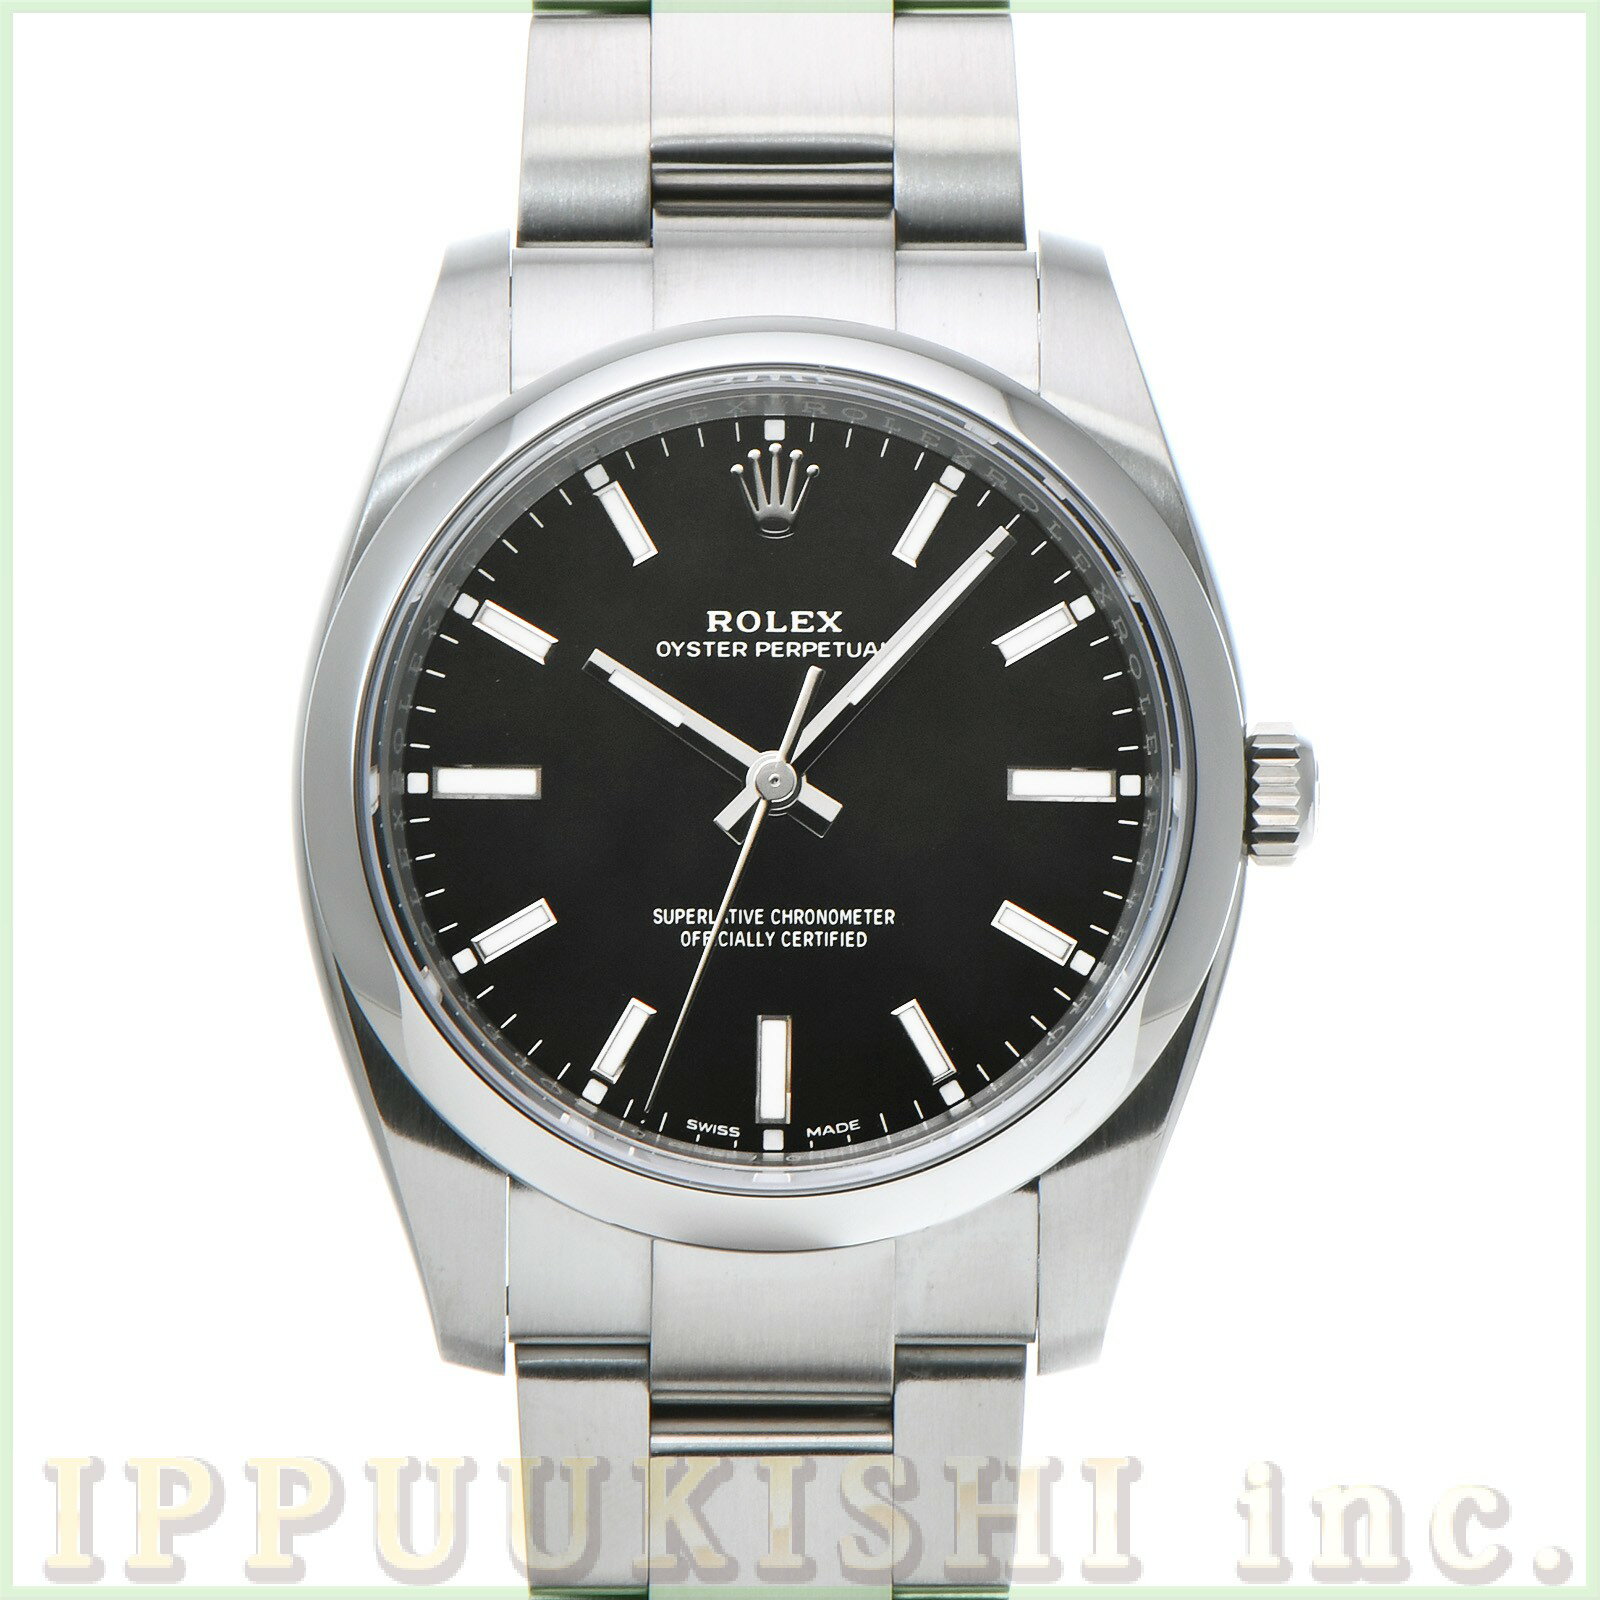 腕時計, メンズ腕時計  ROLEX 34 114200 